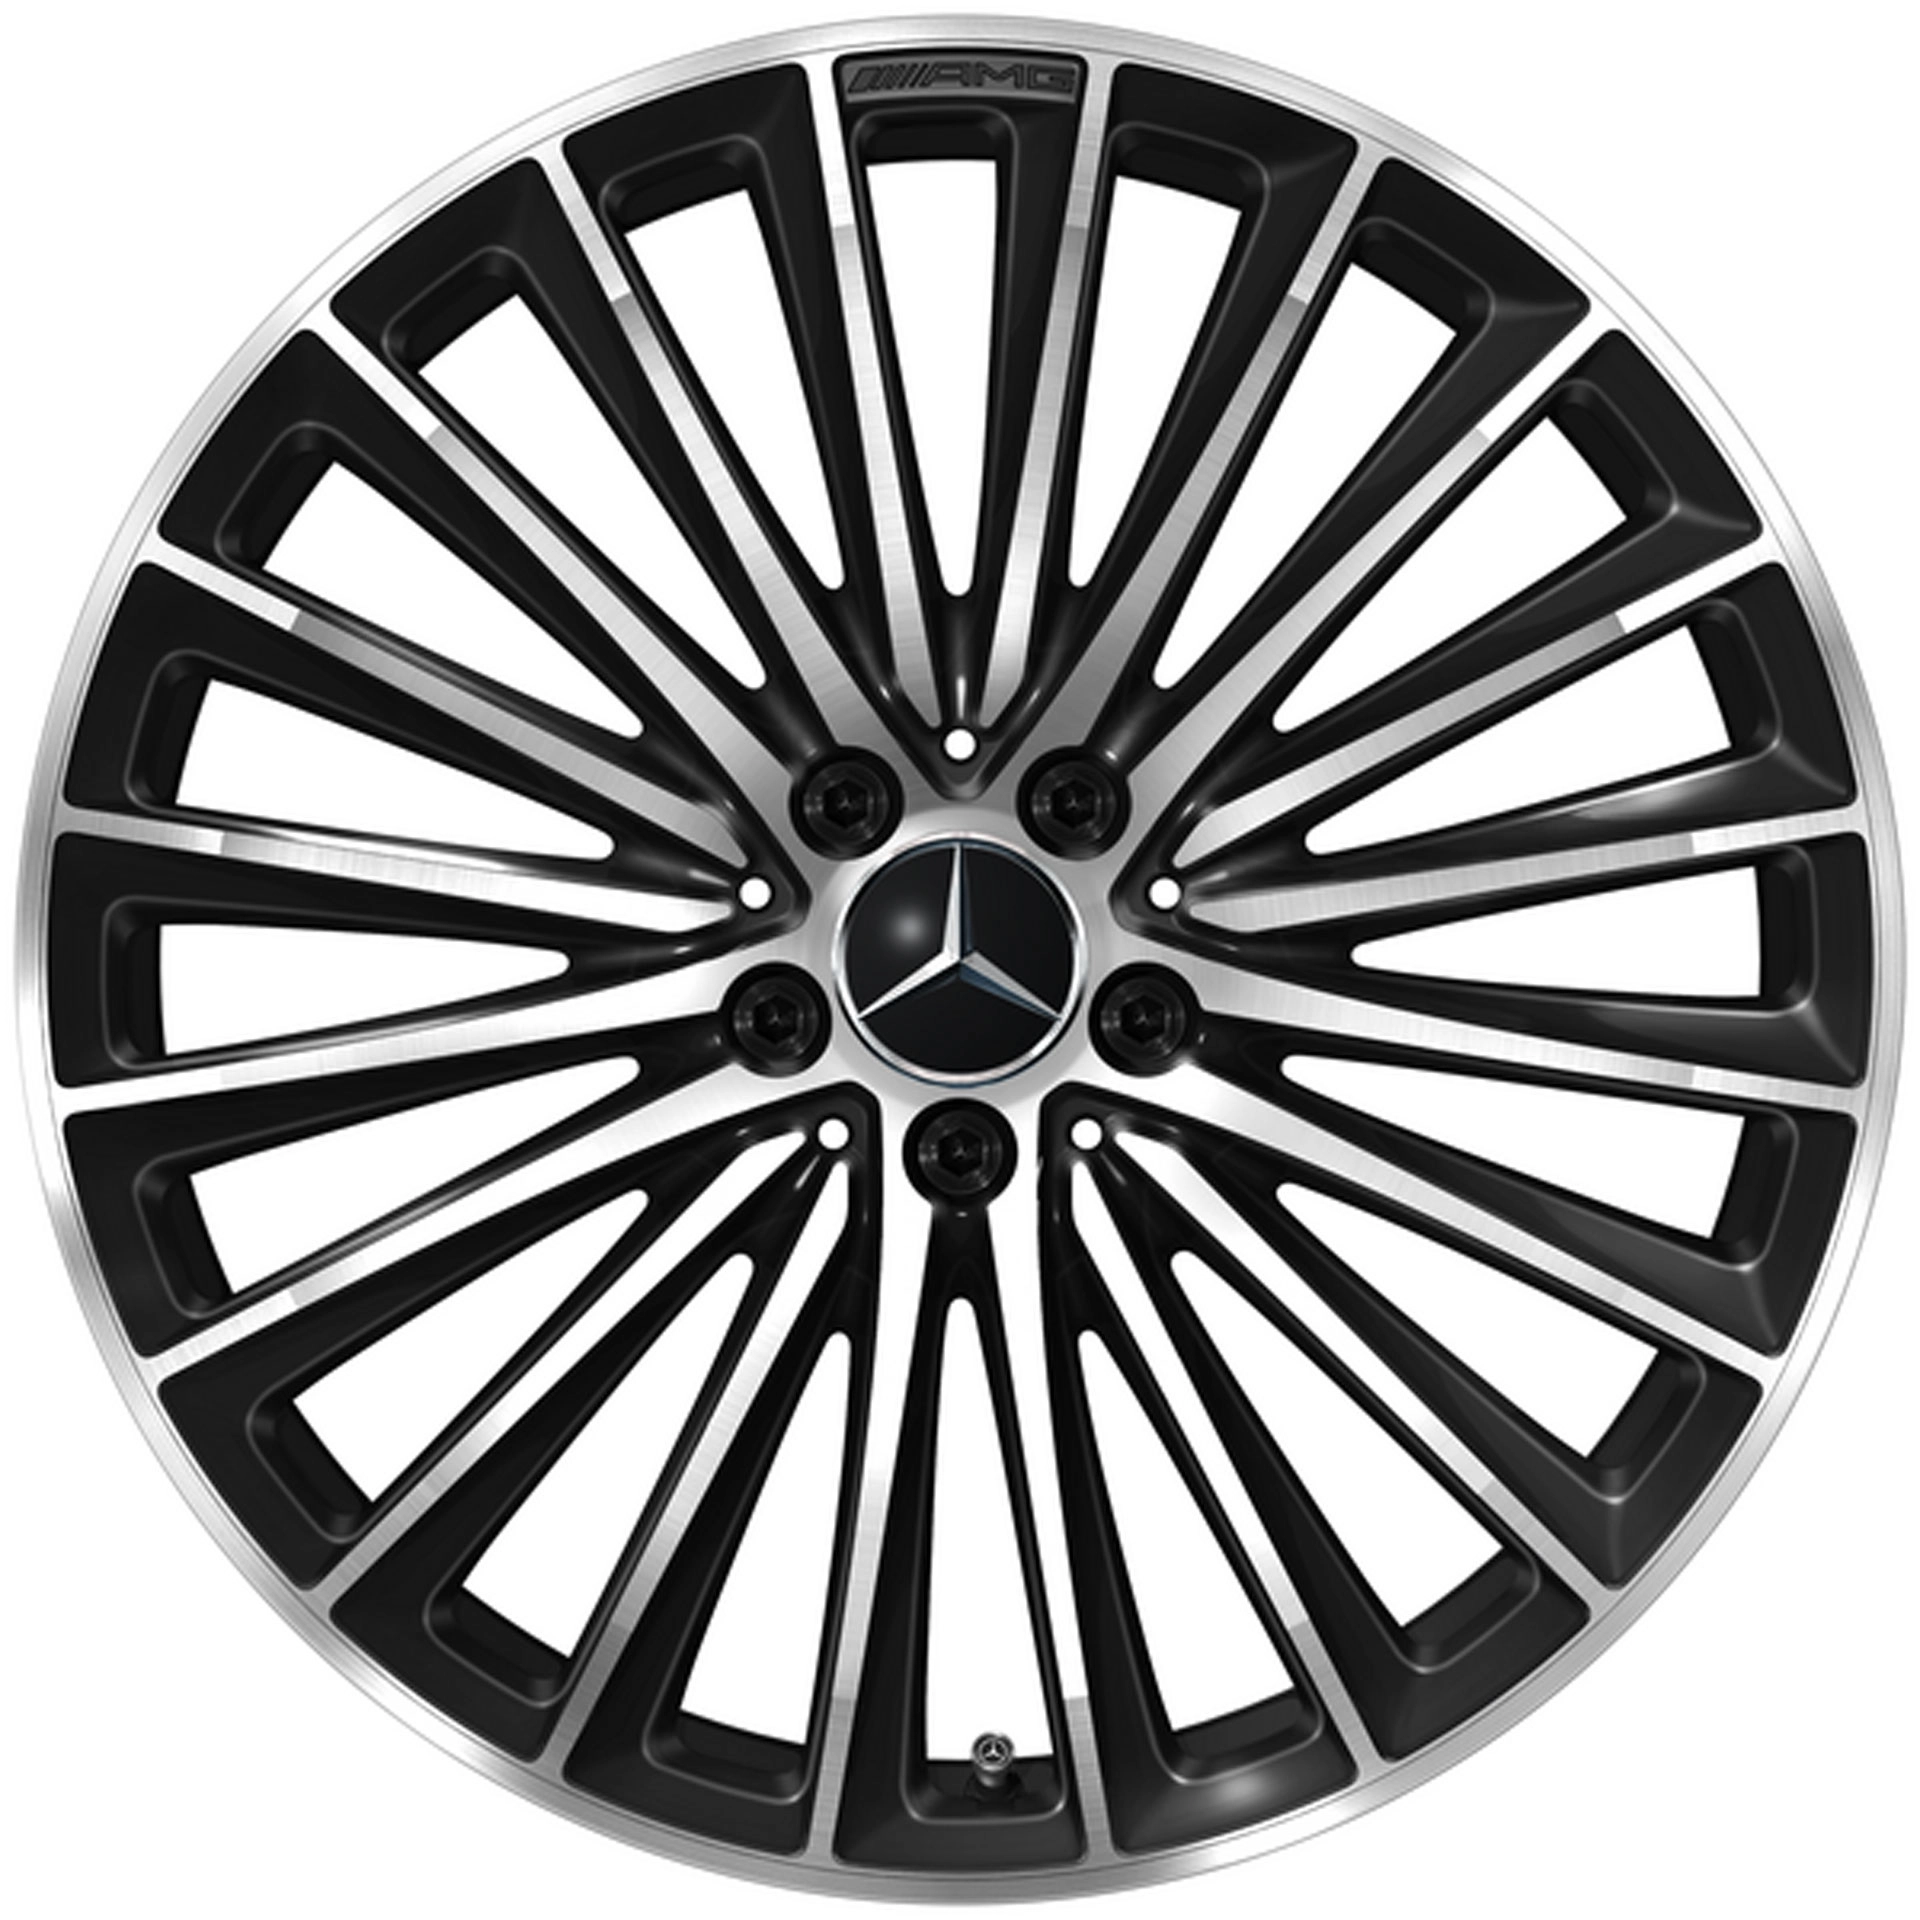 Mercedes-AMG Vielspeichen-Rad 20 Zoll Leichtmetallfelge GLC X254 schwarz glanzgedreht A25440109007X23